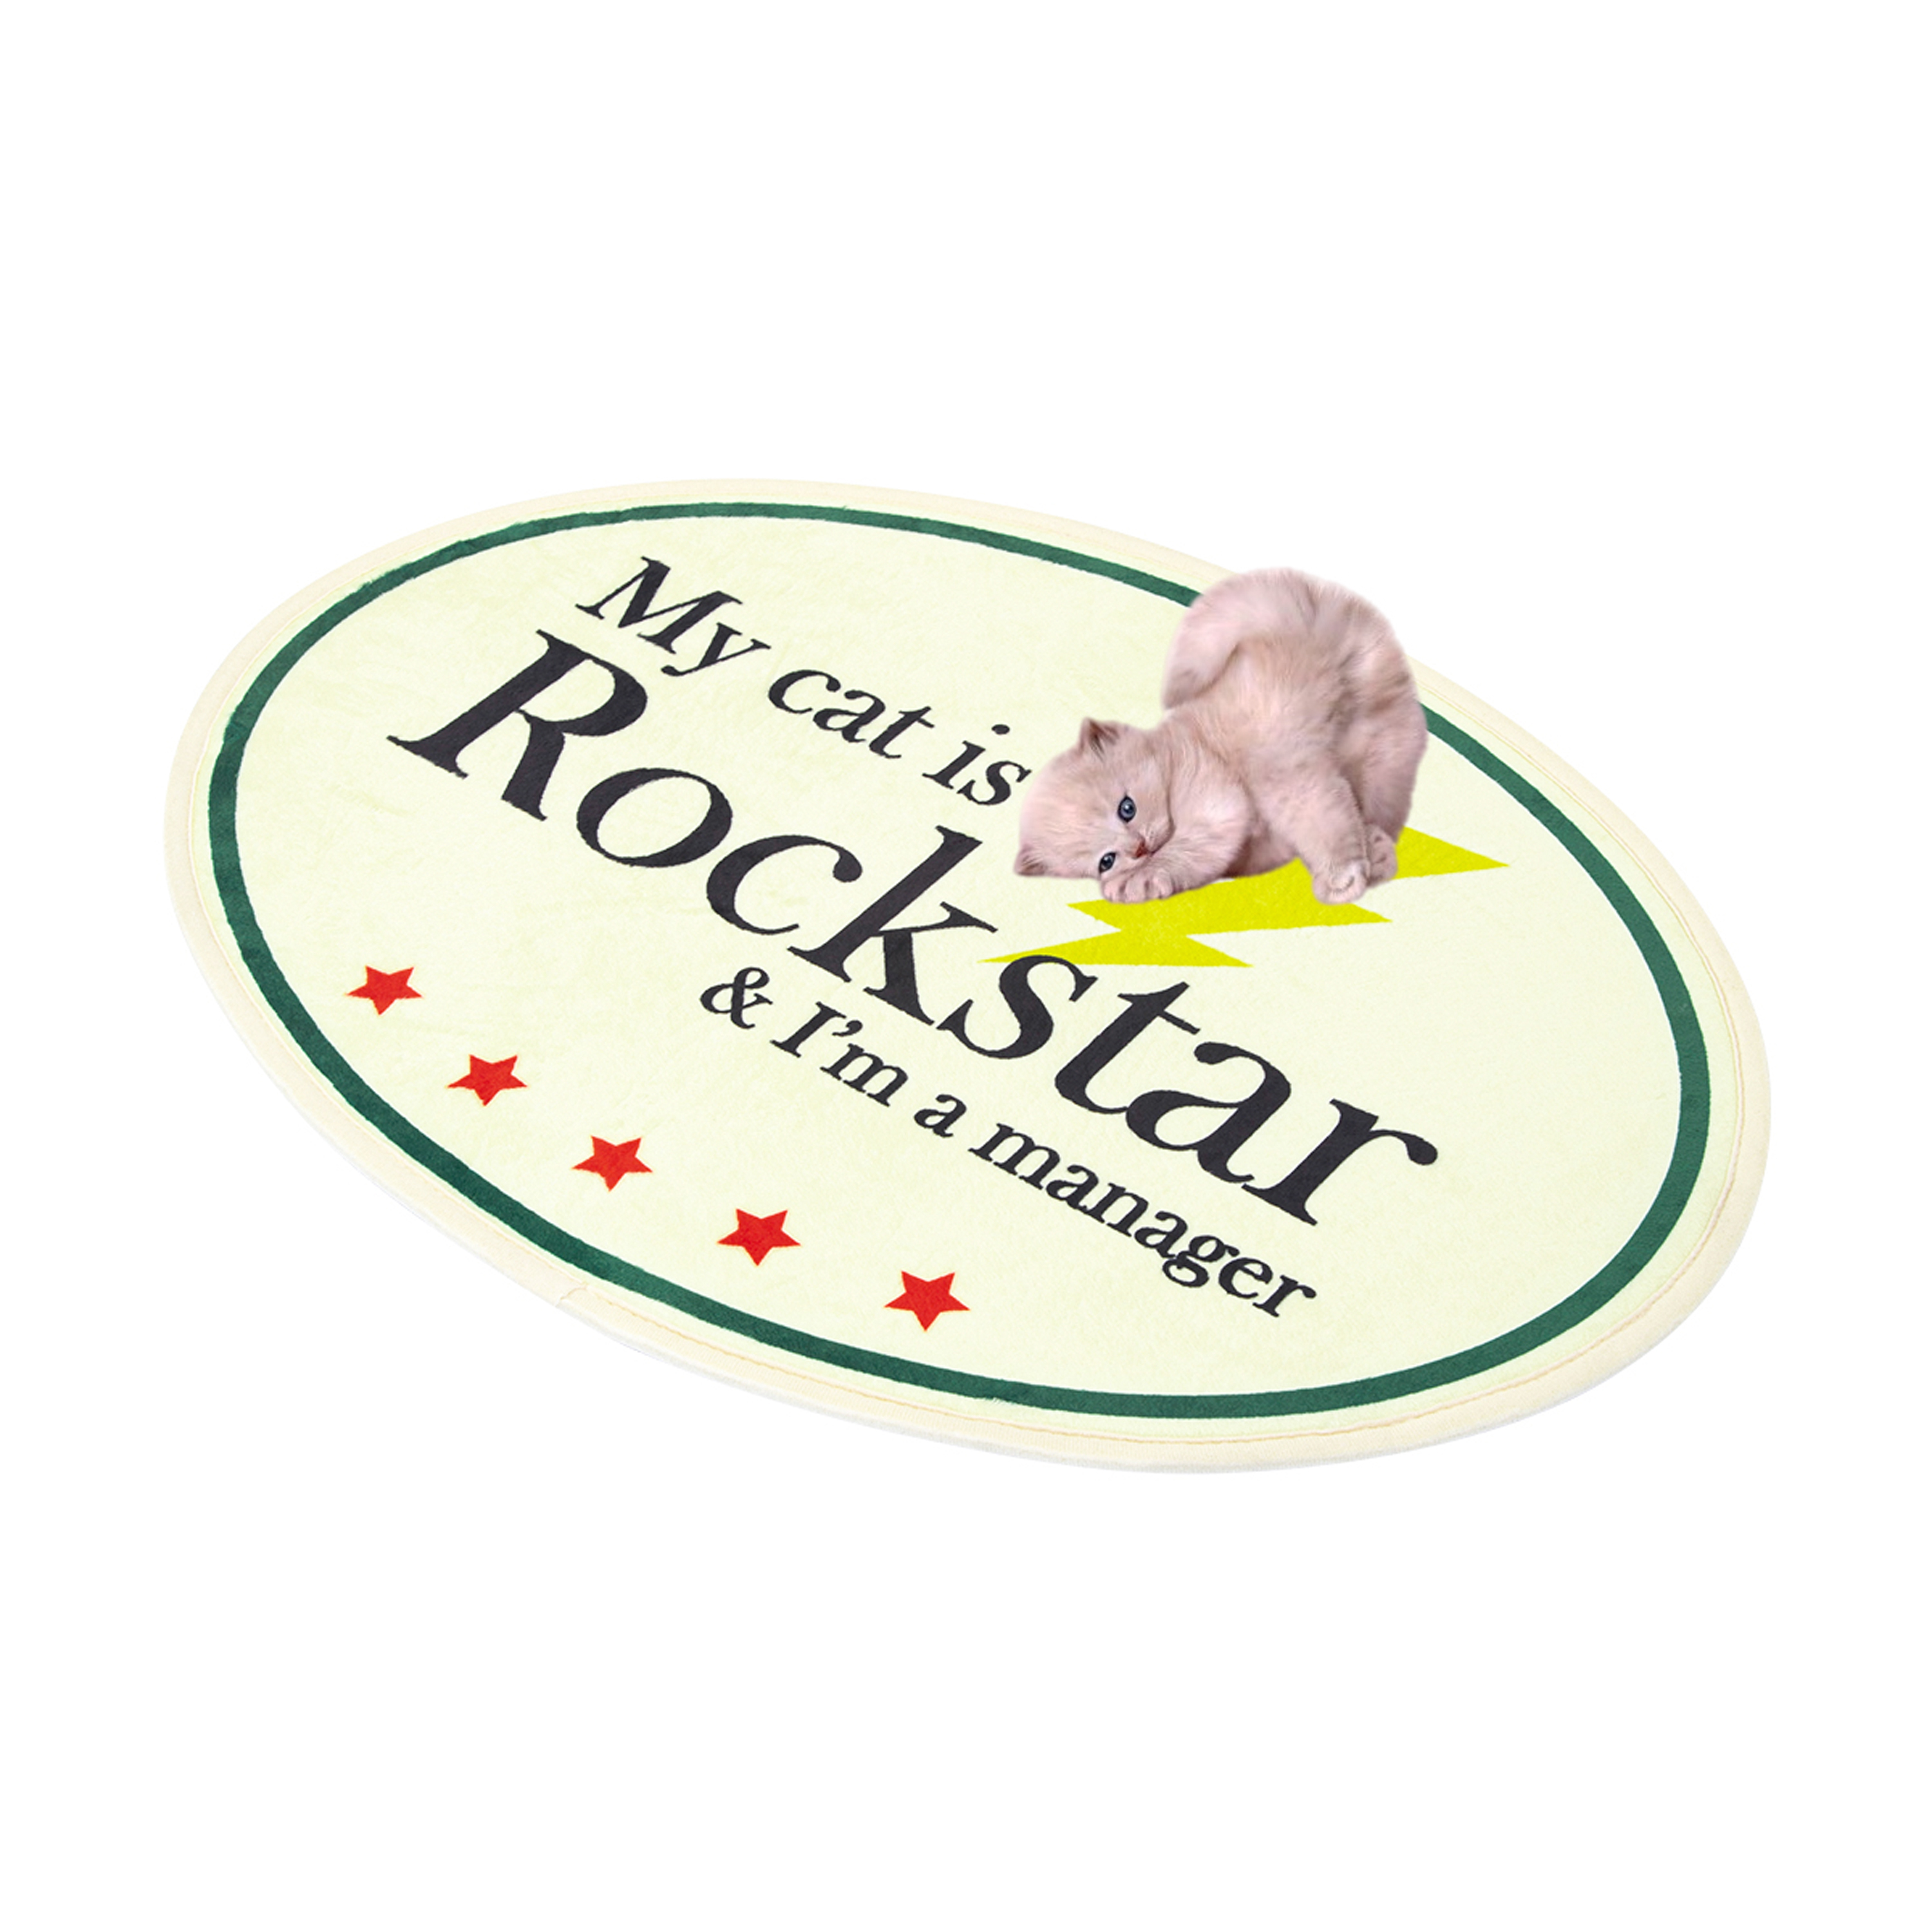 My cat is Rockstar Mini Rug (Ivory)